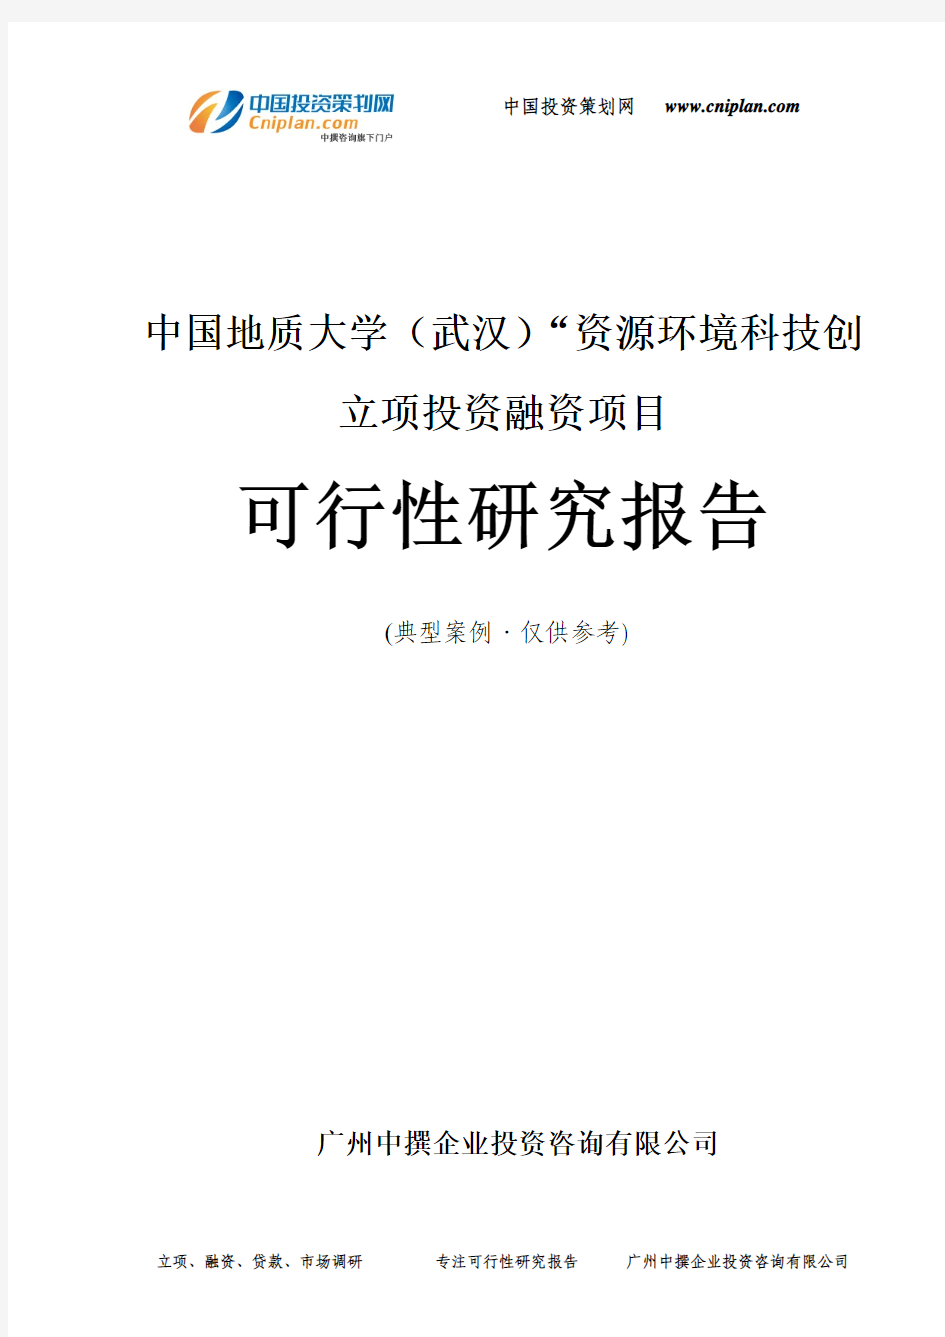 中国地质大学(武汉)“资源环境科技创融资投资立项项目可行性研究报告(中撰咨询)